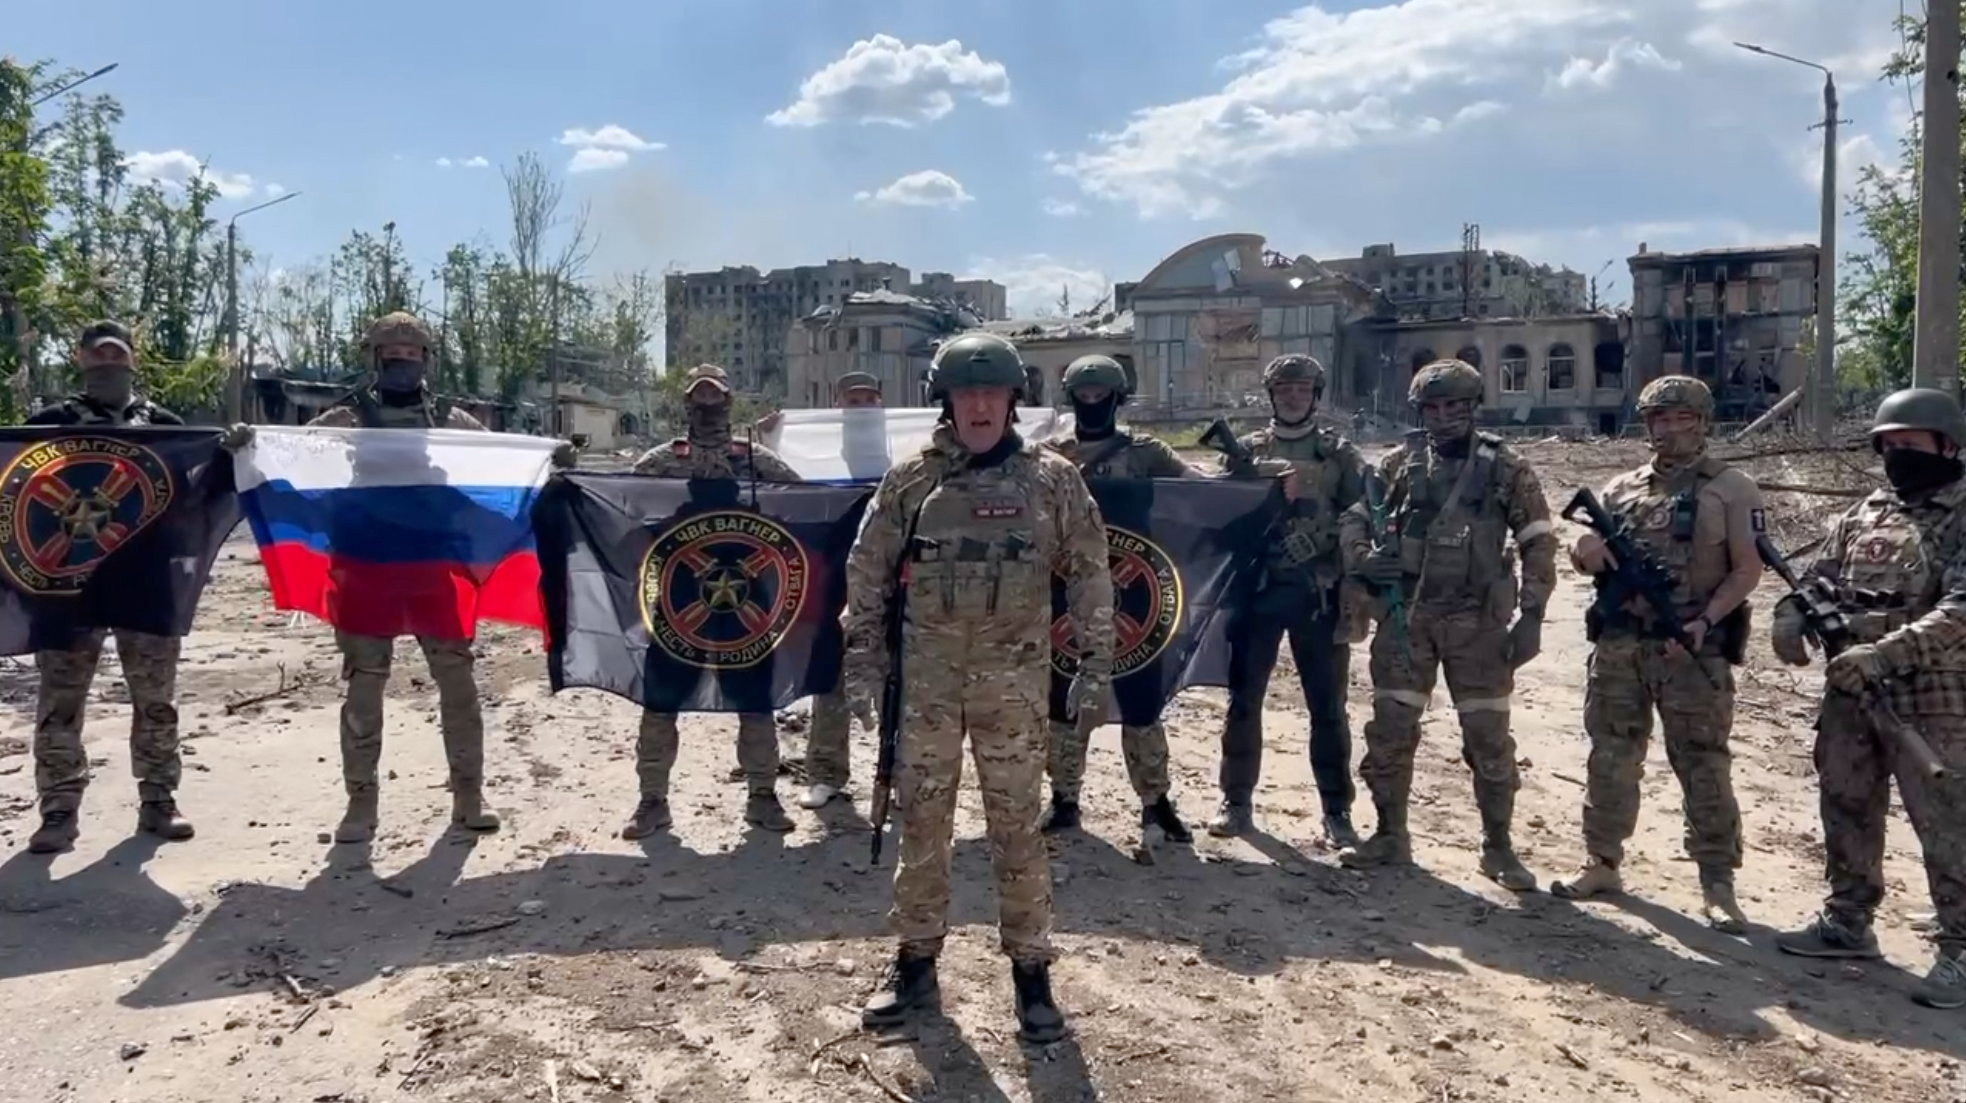 Los mercenarios del Grupo Wagner cada vez se muestran más distanciados del Ejército ruso, lo que lleva a Putin a buscar combatientes contratados por otros medios (Press service of "Concord"/Handout via REUTERS)